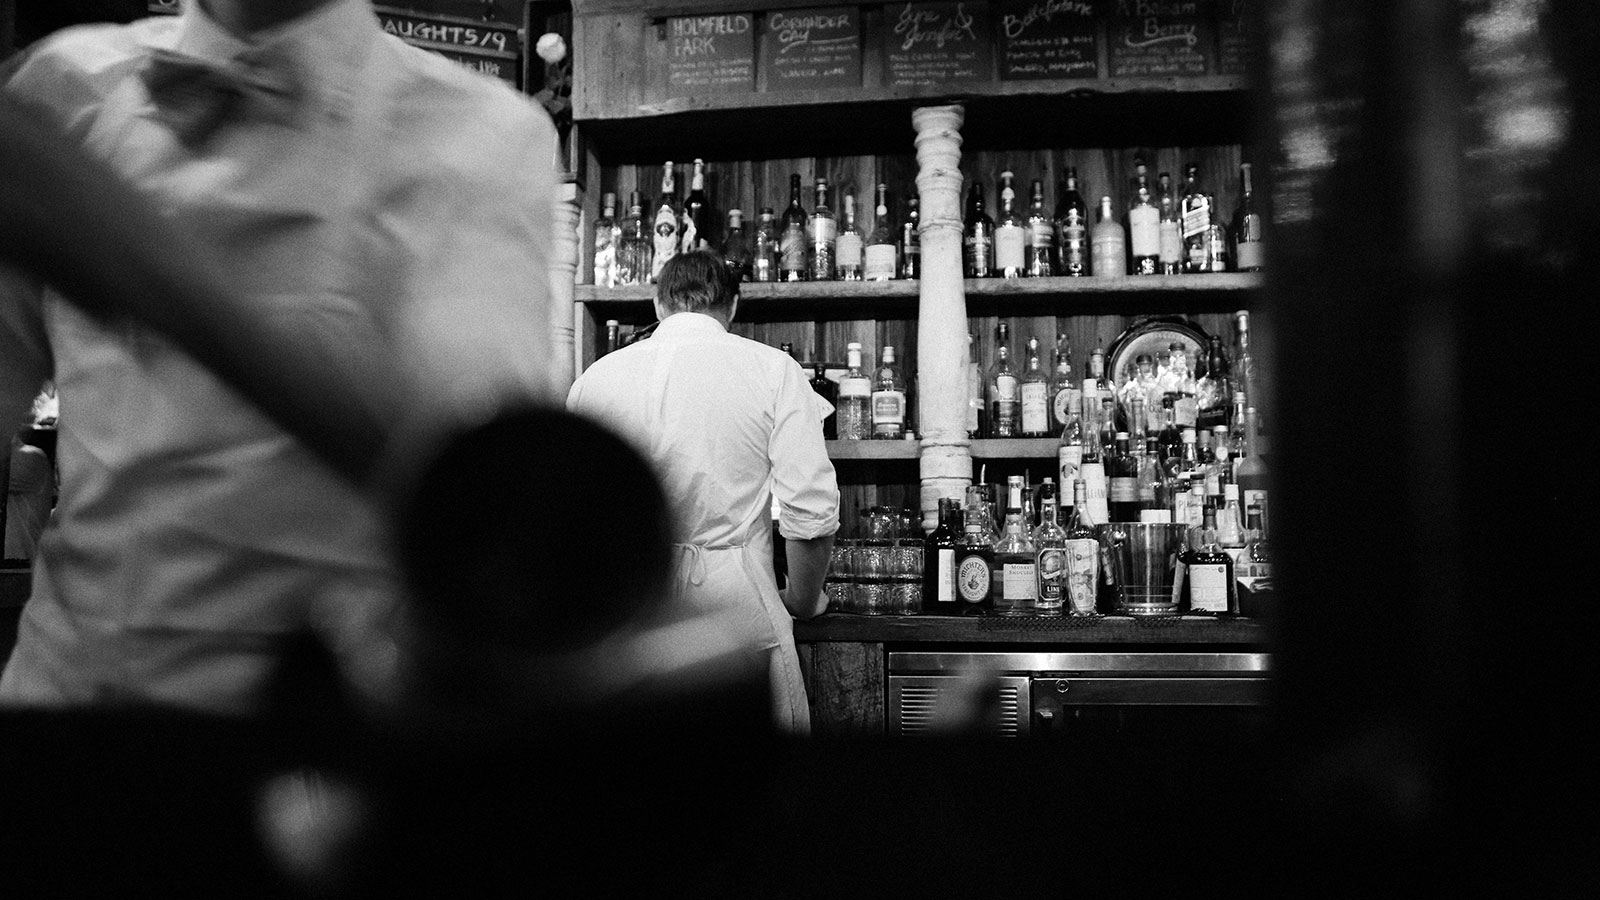 Waitstaff behind bar